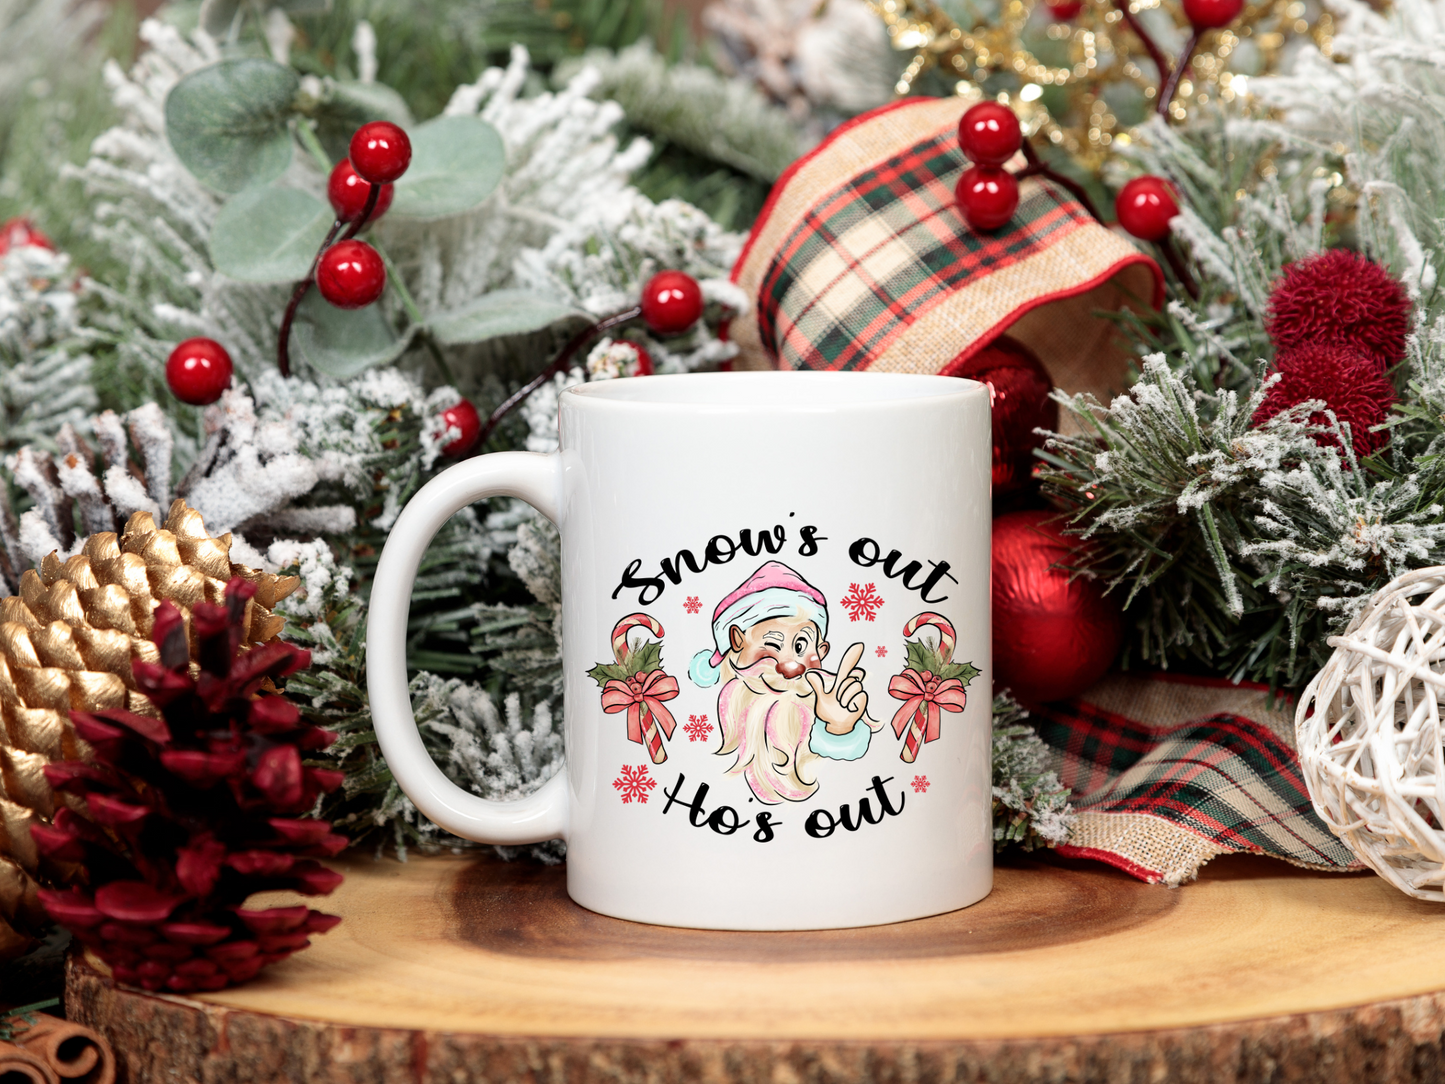 Snow's Out Ho's Out Coffee Mug